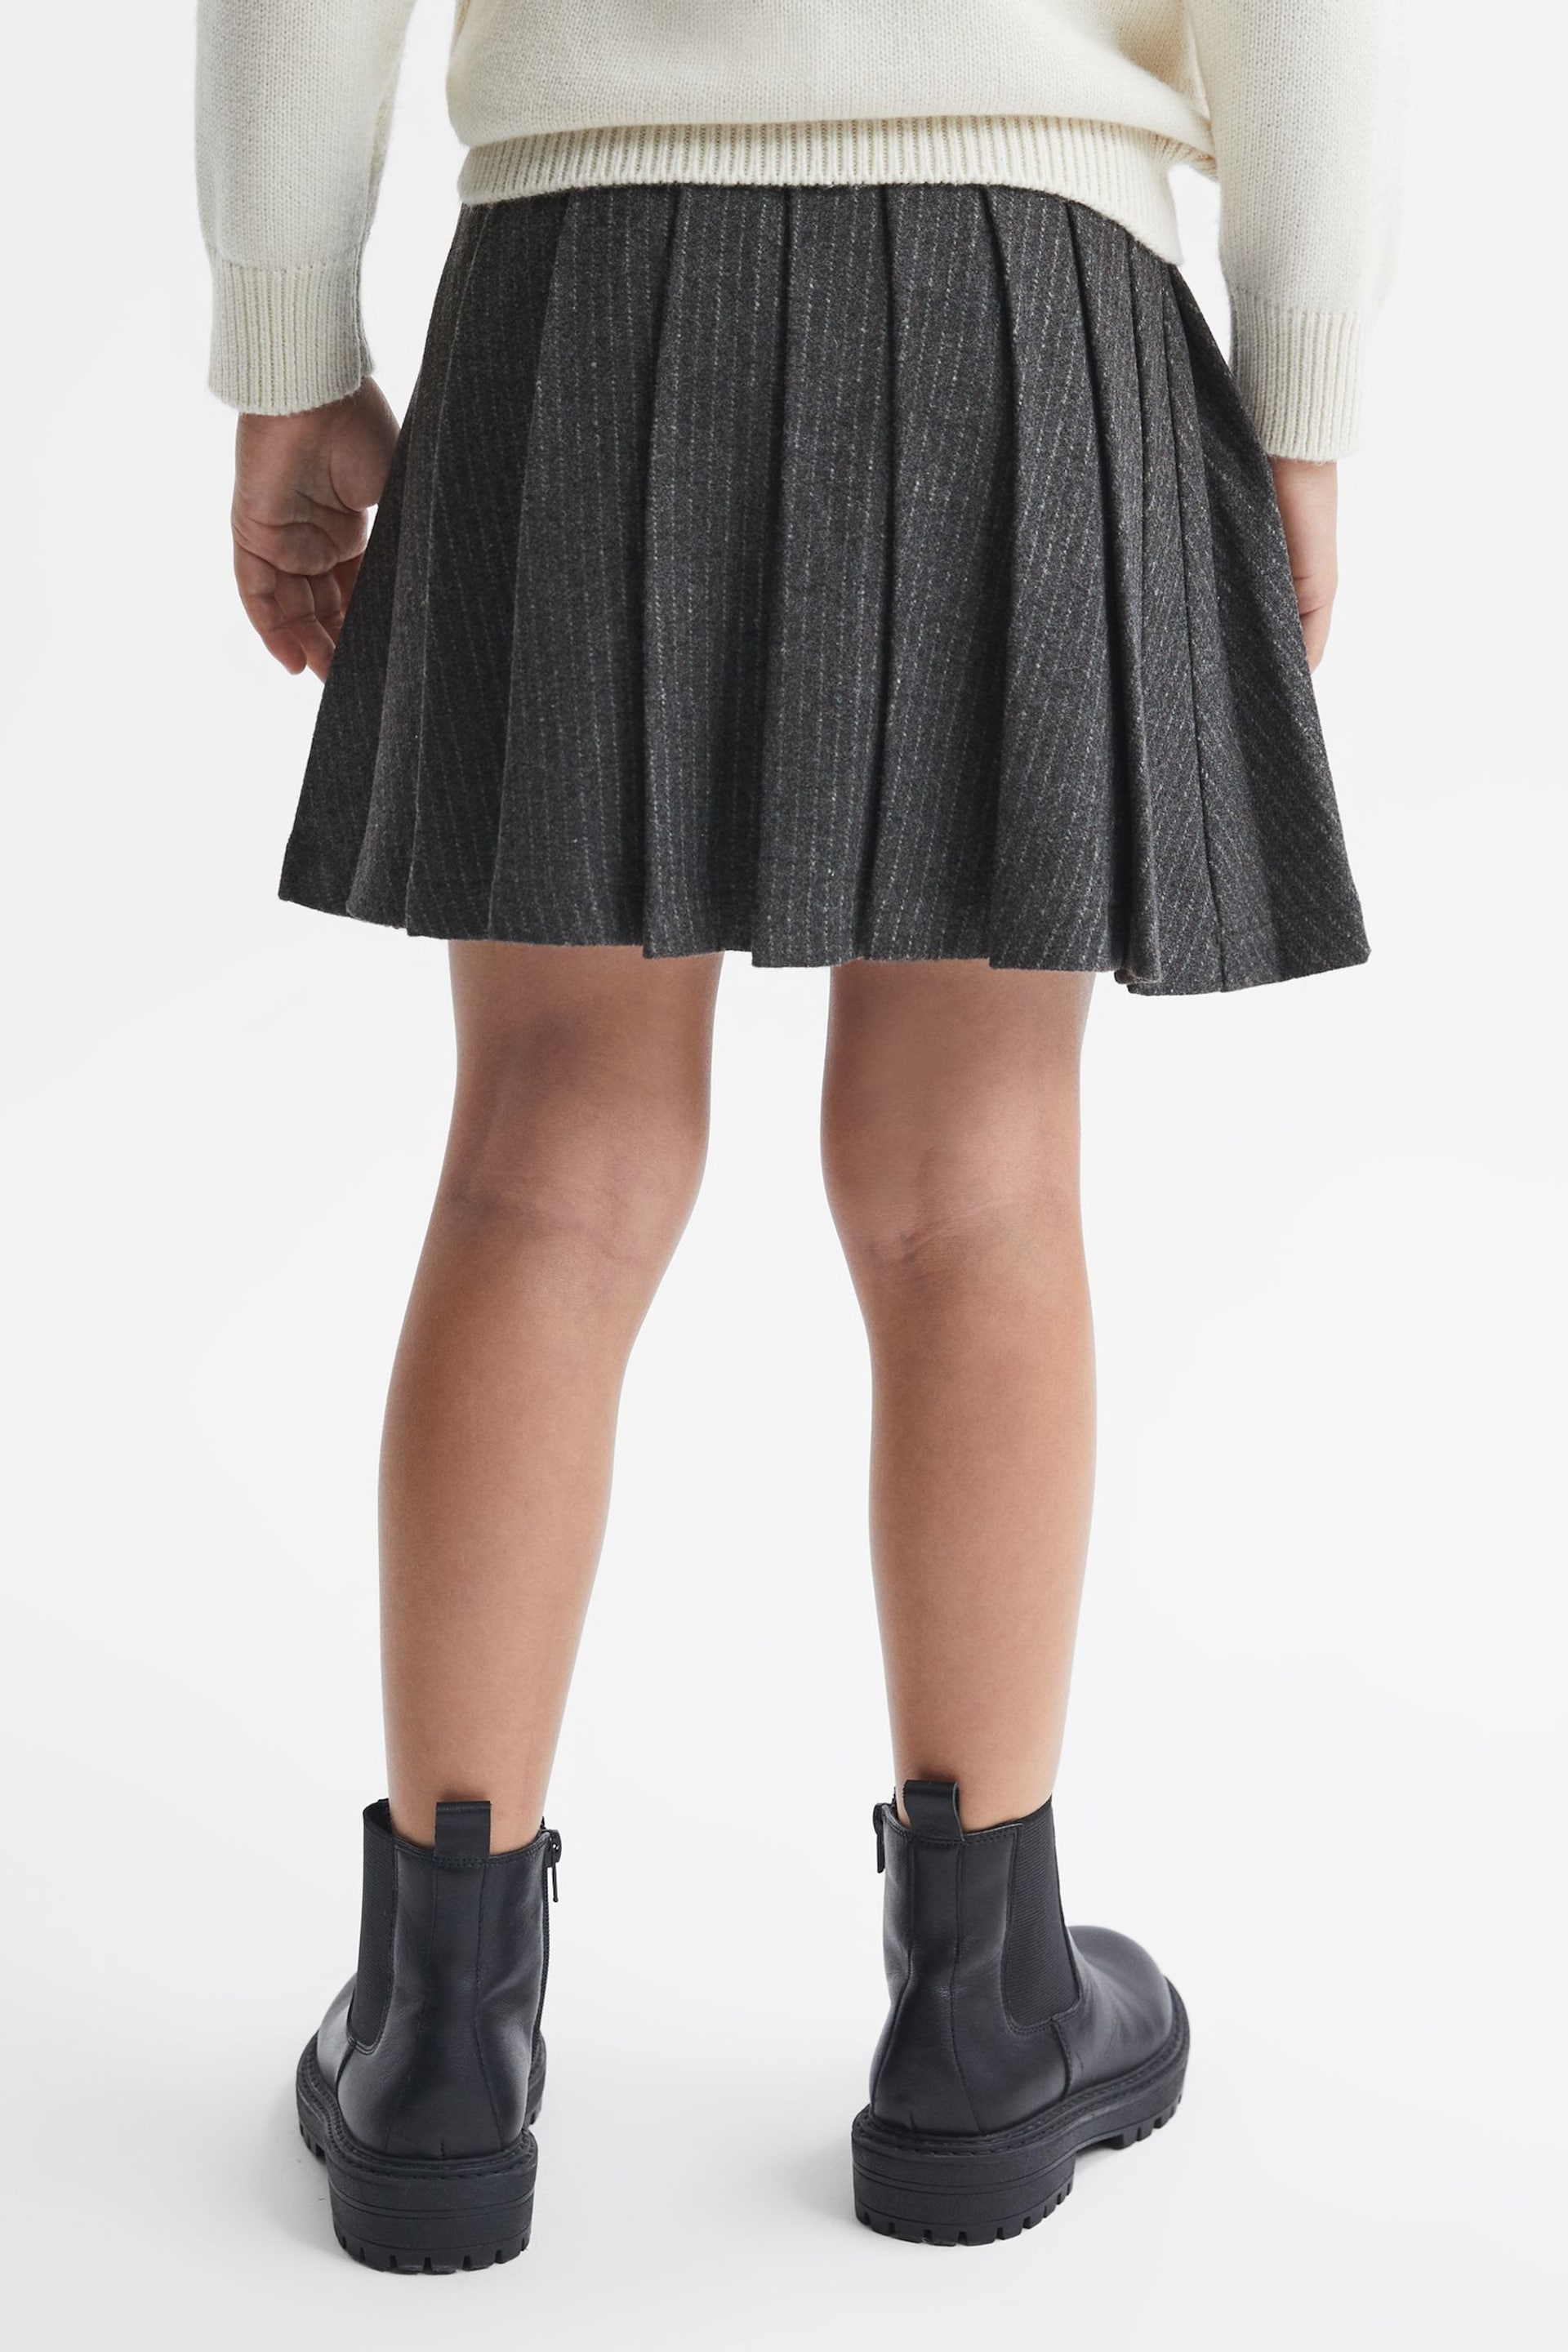 Reiss Dark Grey Marcie Junior Wool Blend Striped Pleated Skirt - Image 5 of 6